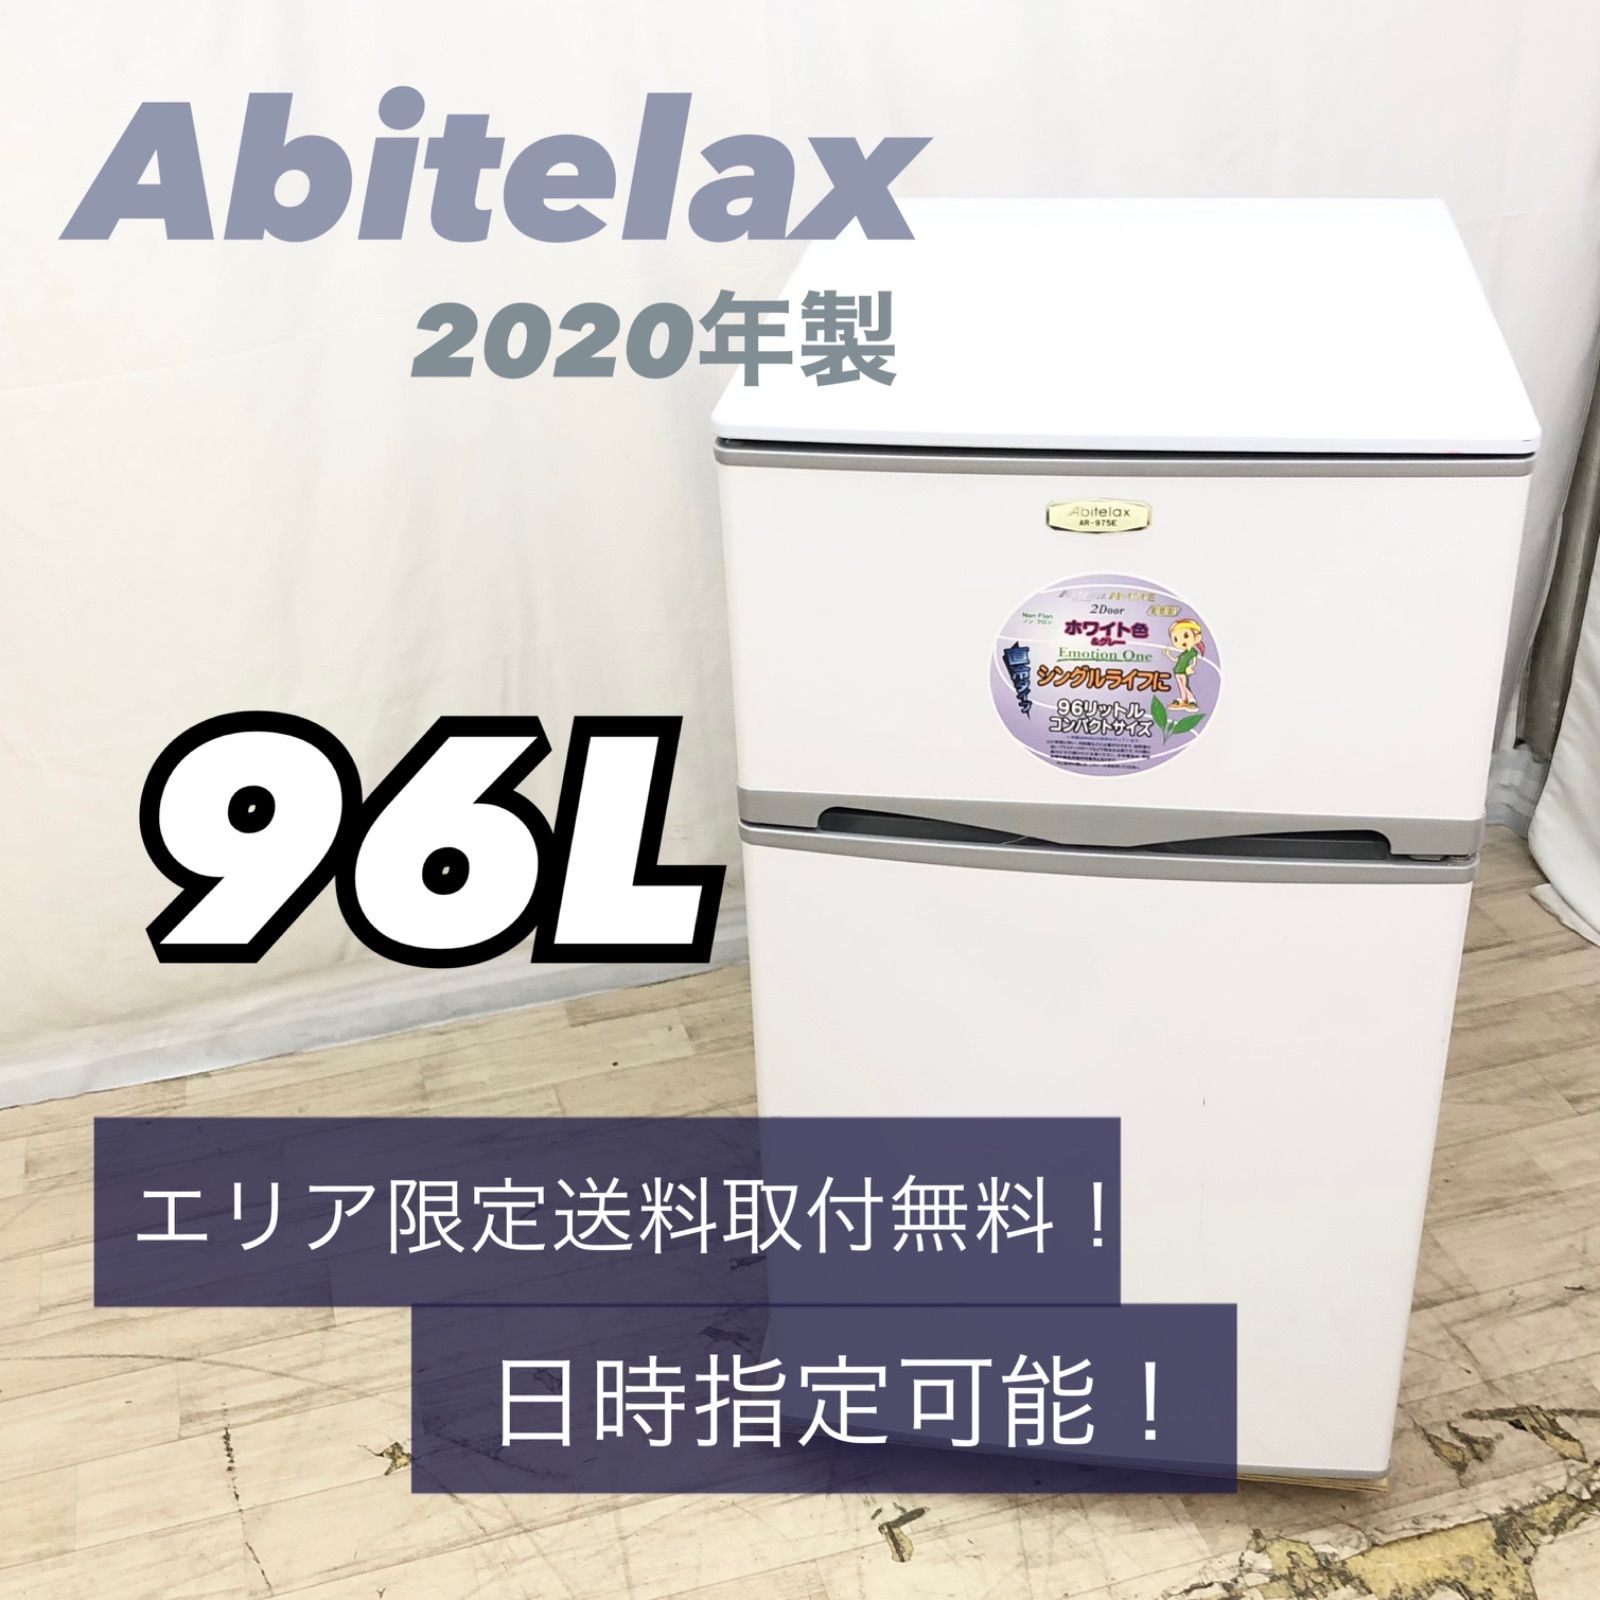 Abitelax / アビテラックス 96L 冷蔵庫 2016年 AR-975E - キッチン家電